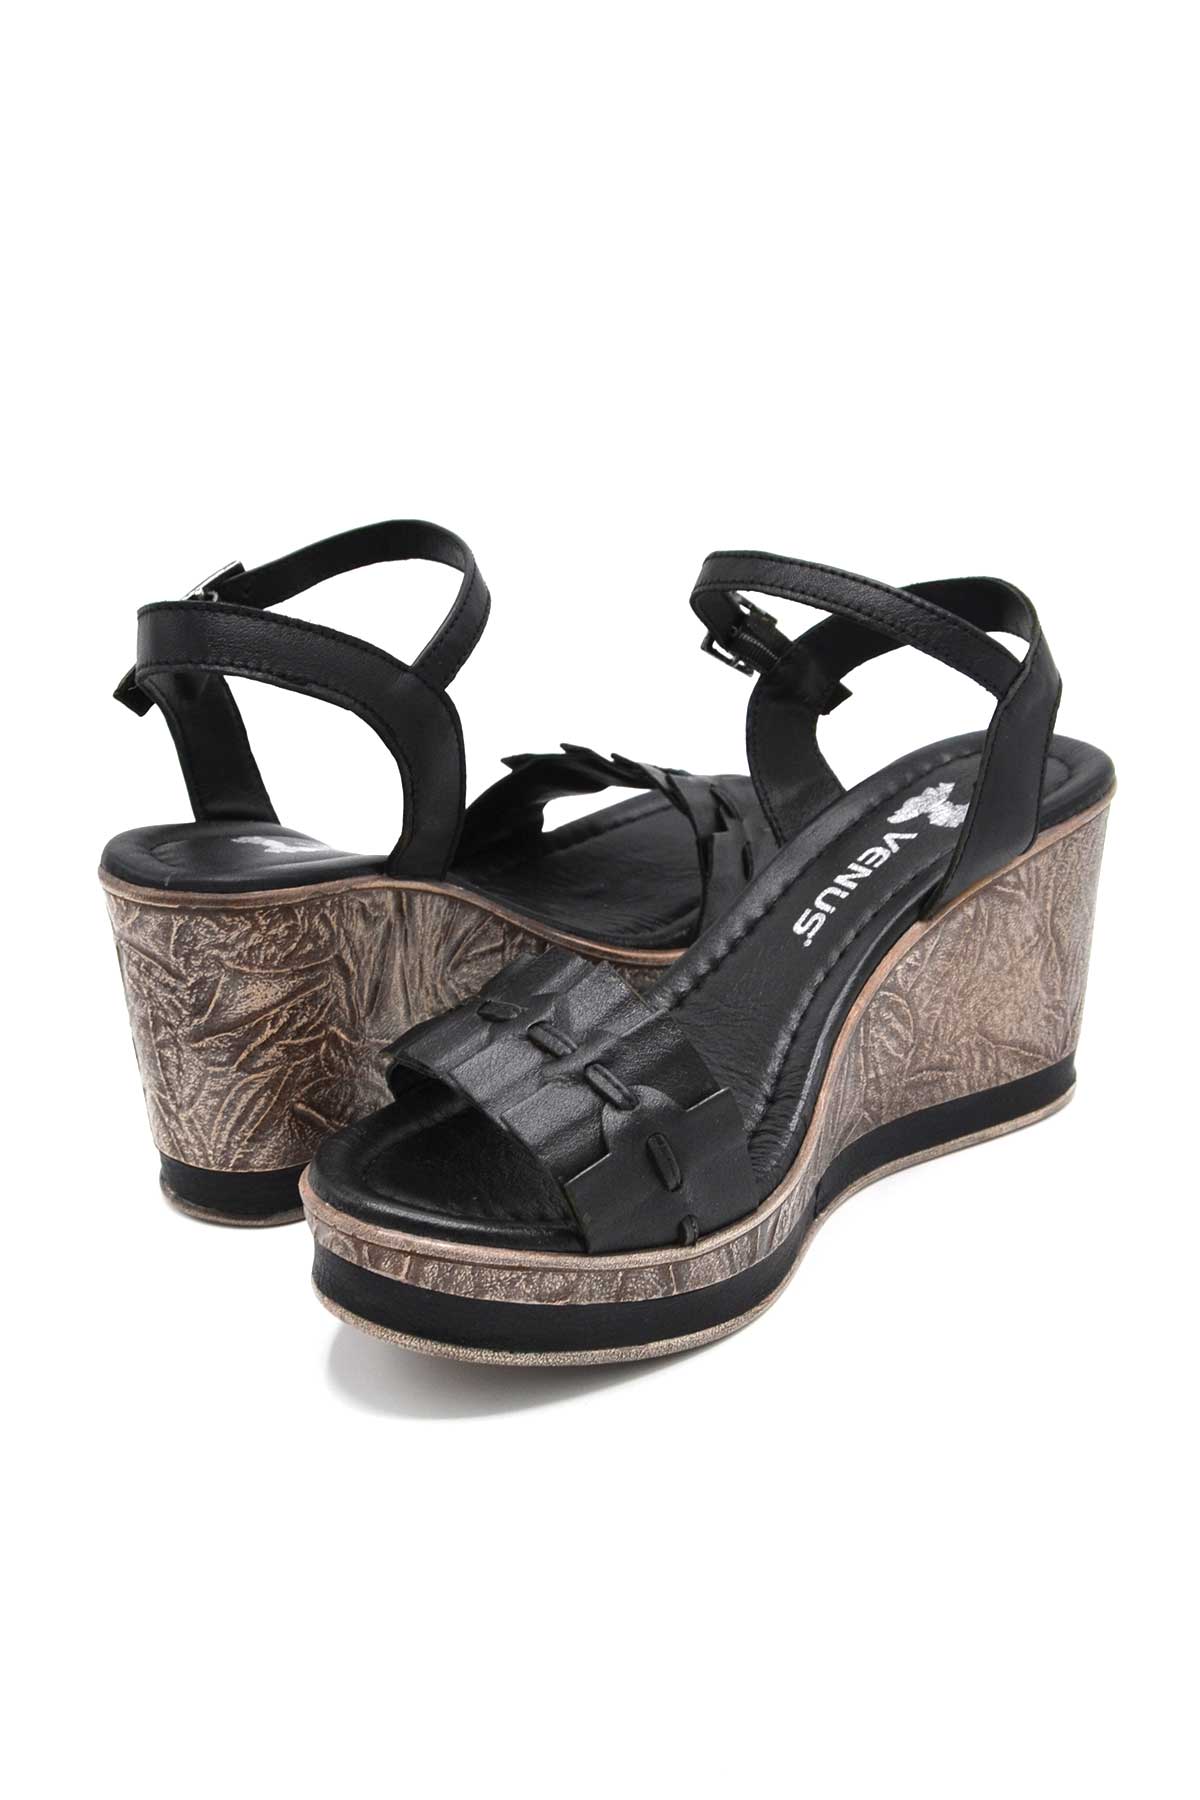 Kadın Dolgu Topuk Deri Sandalet Siyah 2015715Y - Thumbnail